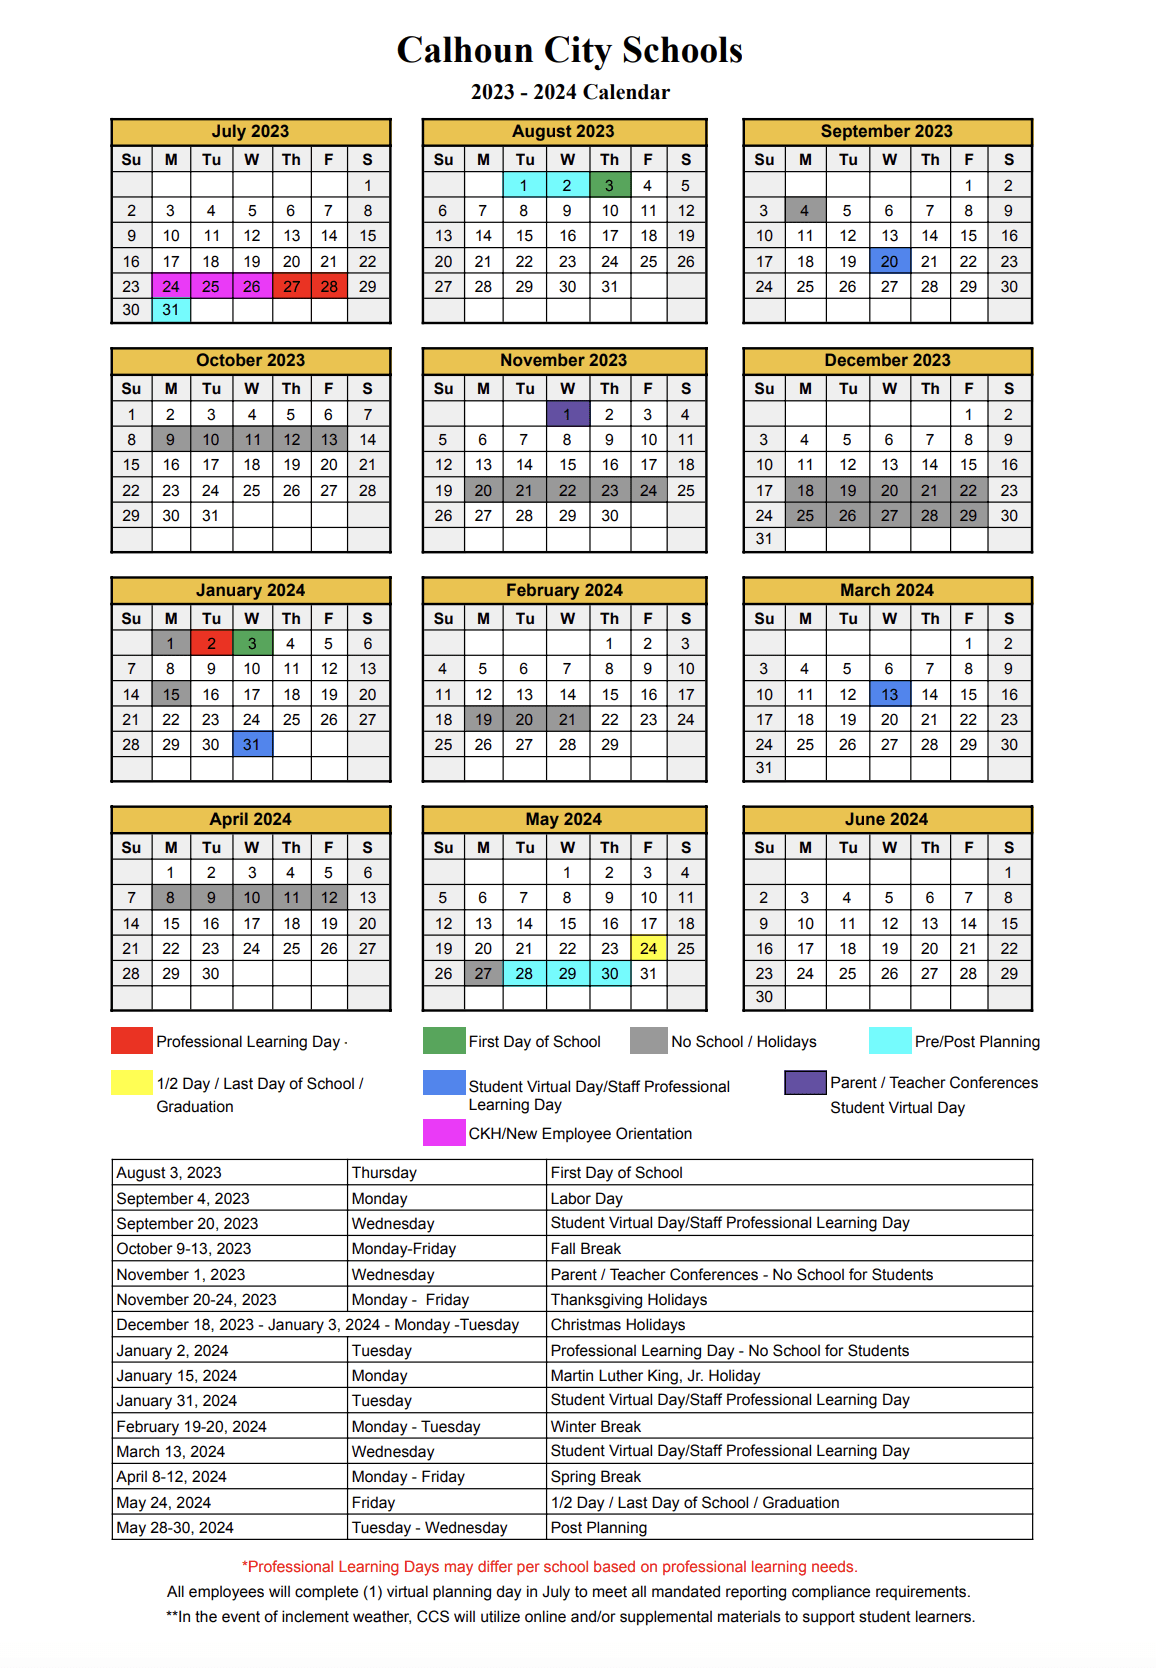 Calhoun City Schools Calendar 2023 and 2024 - PublicHolidays.com